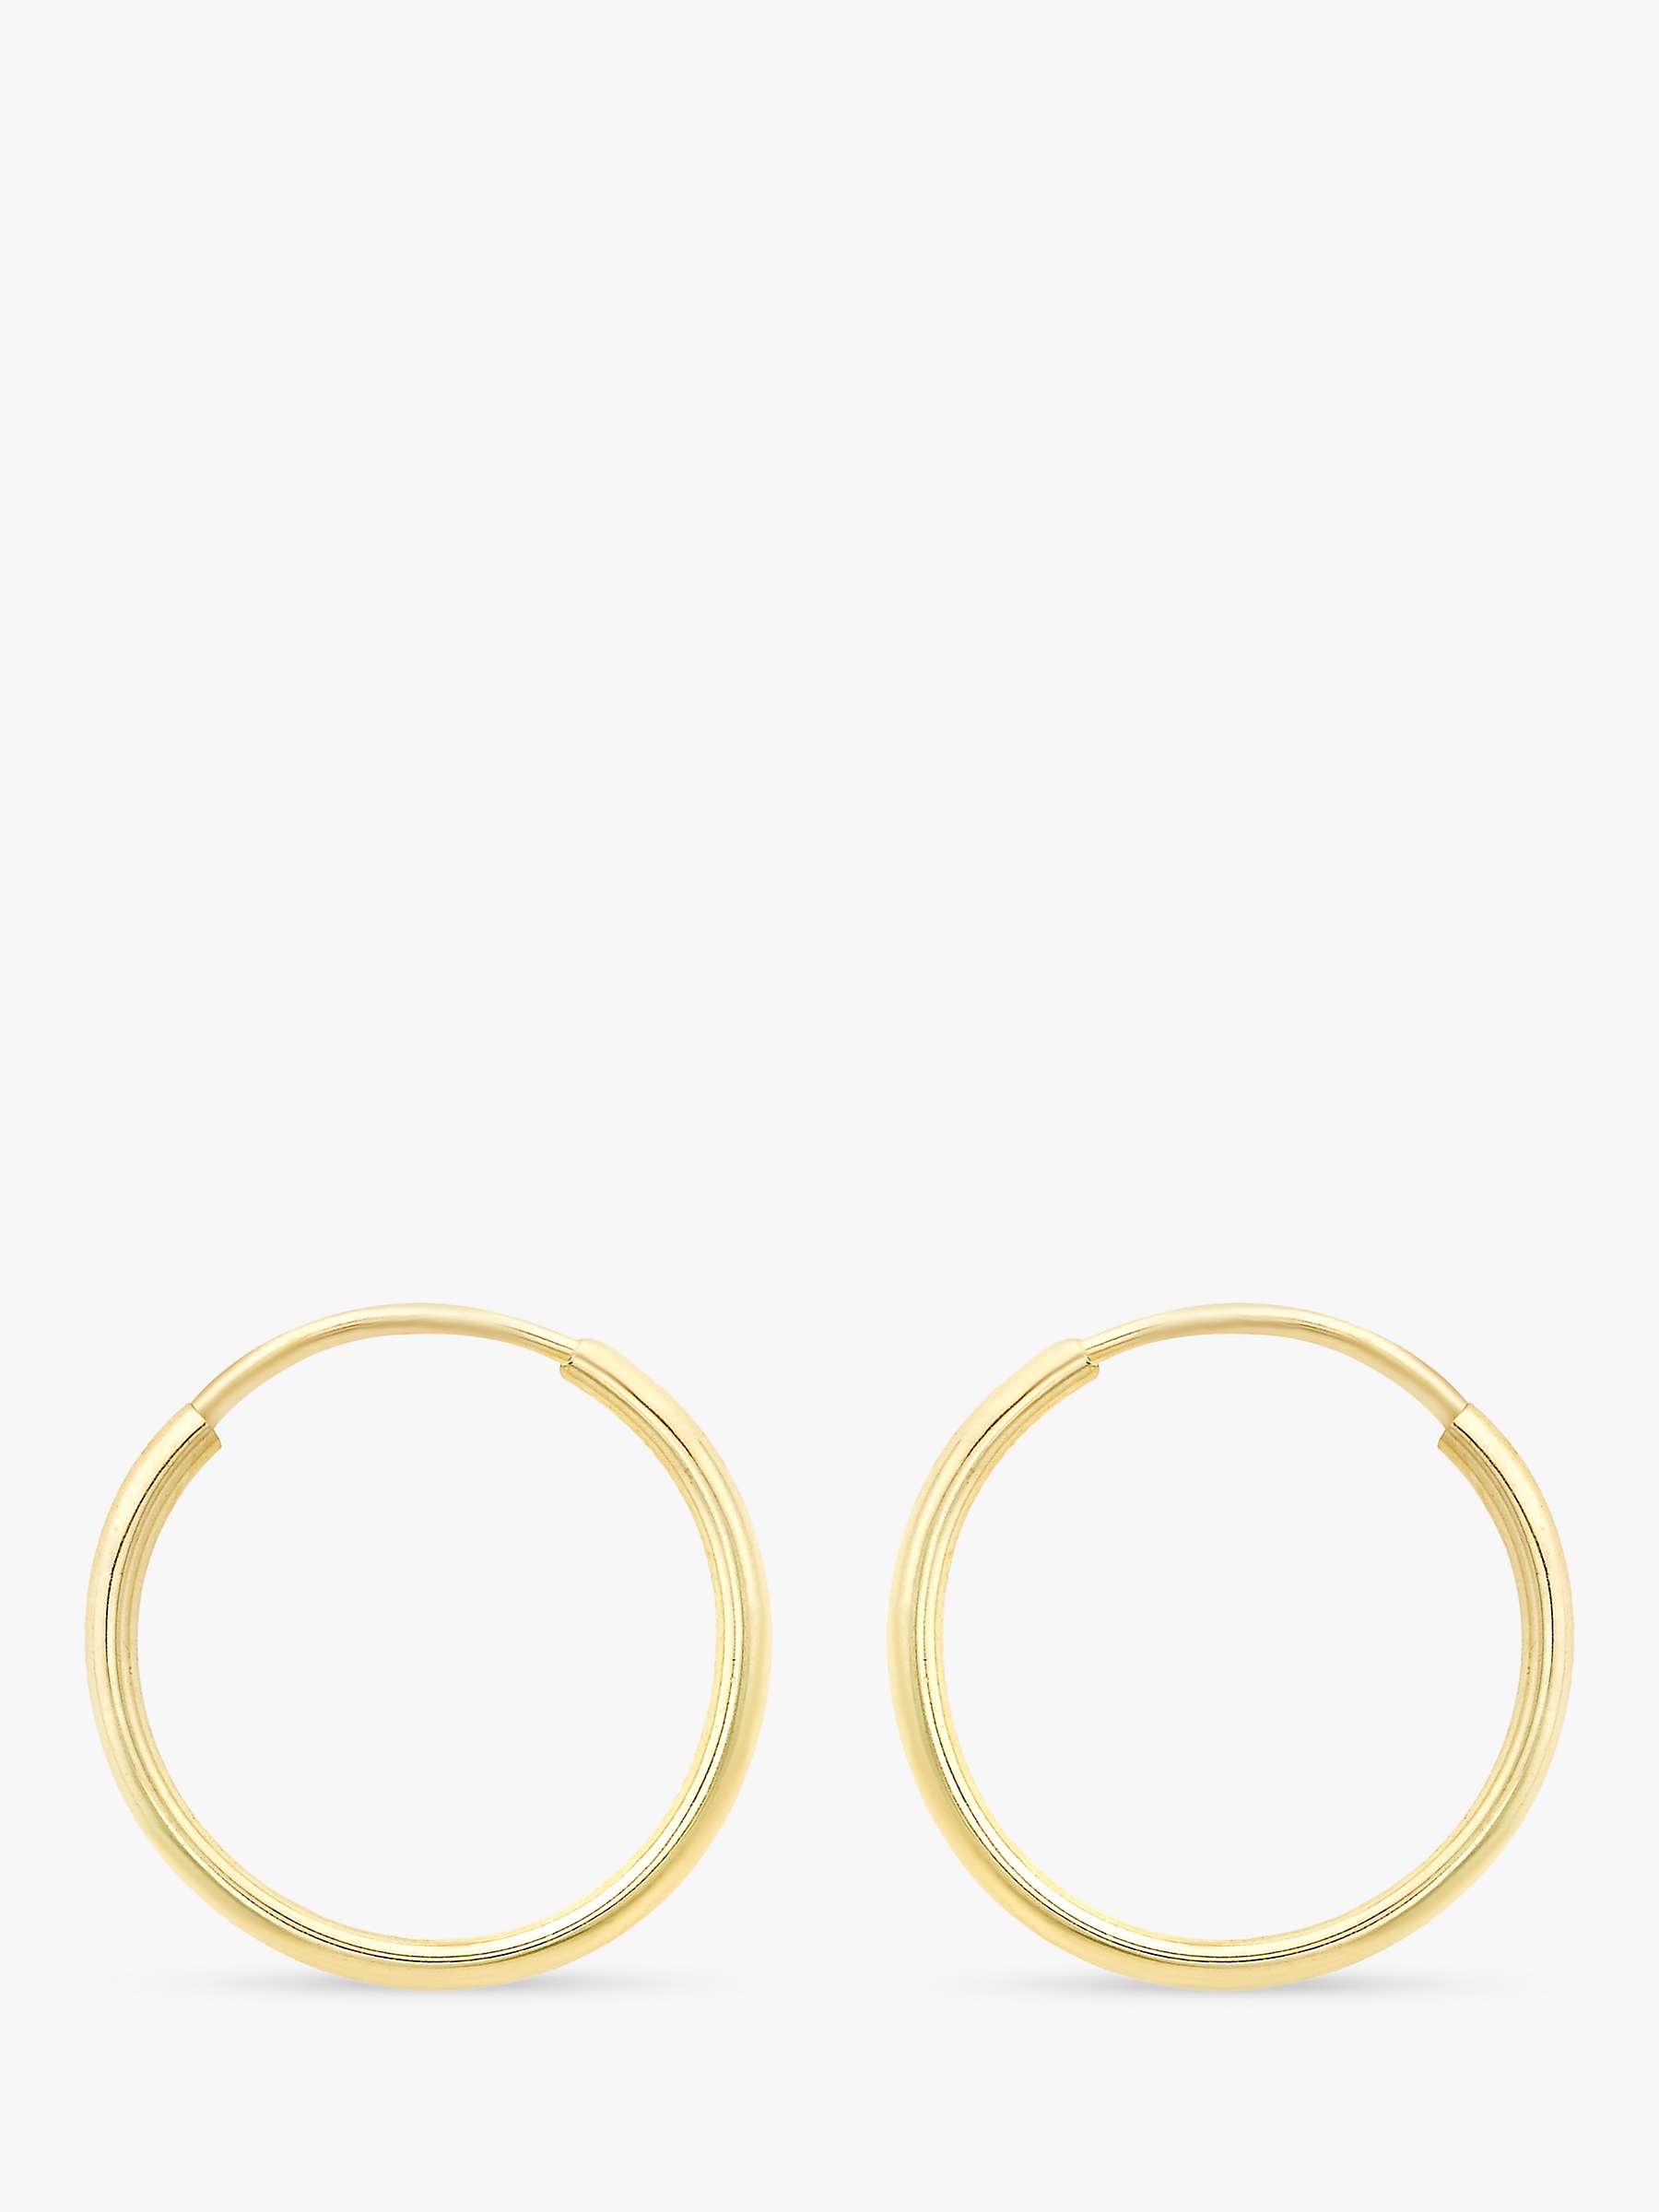 Buy IBB 9ct Gold Plain Hoop Earrings Online at johnlewis.com